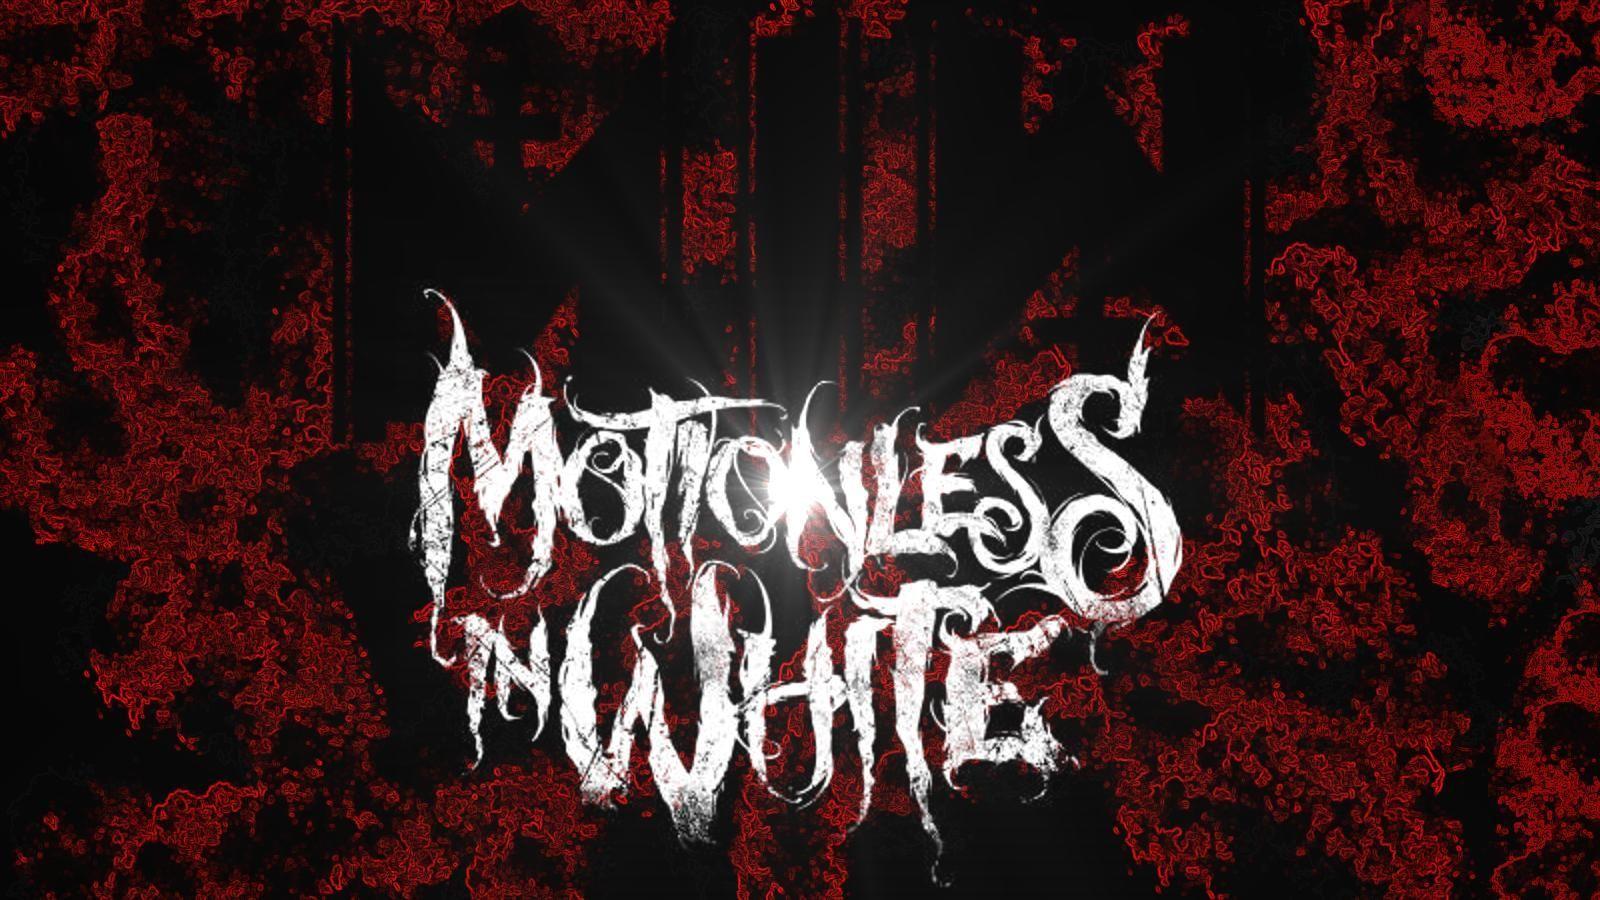 Motionless In White Wallpaper. (31++ Wallpaper)